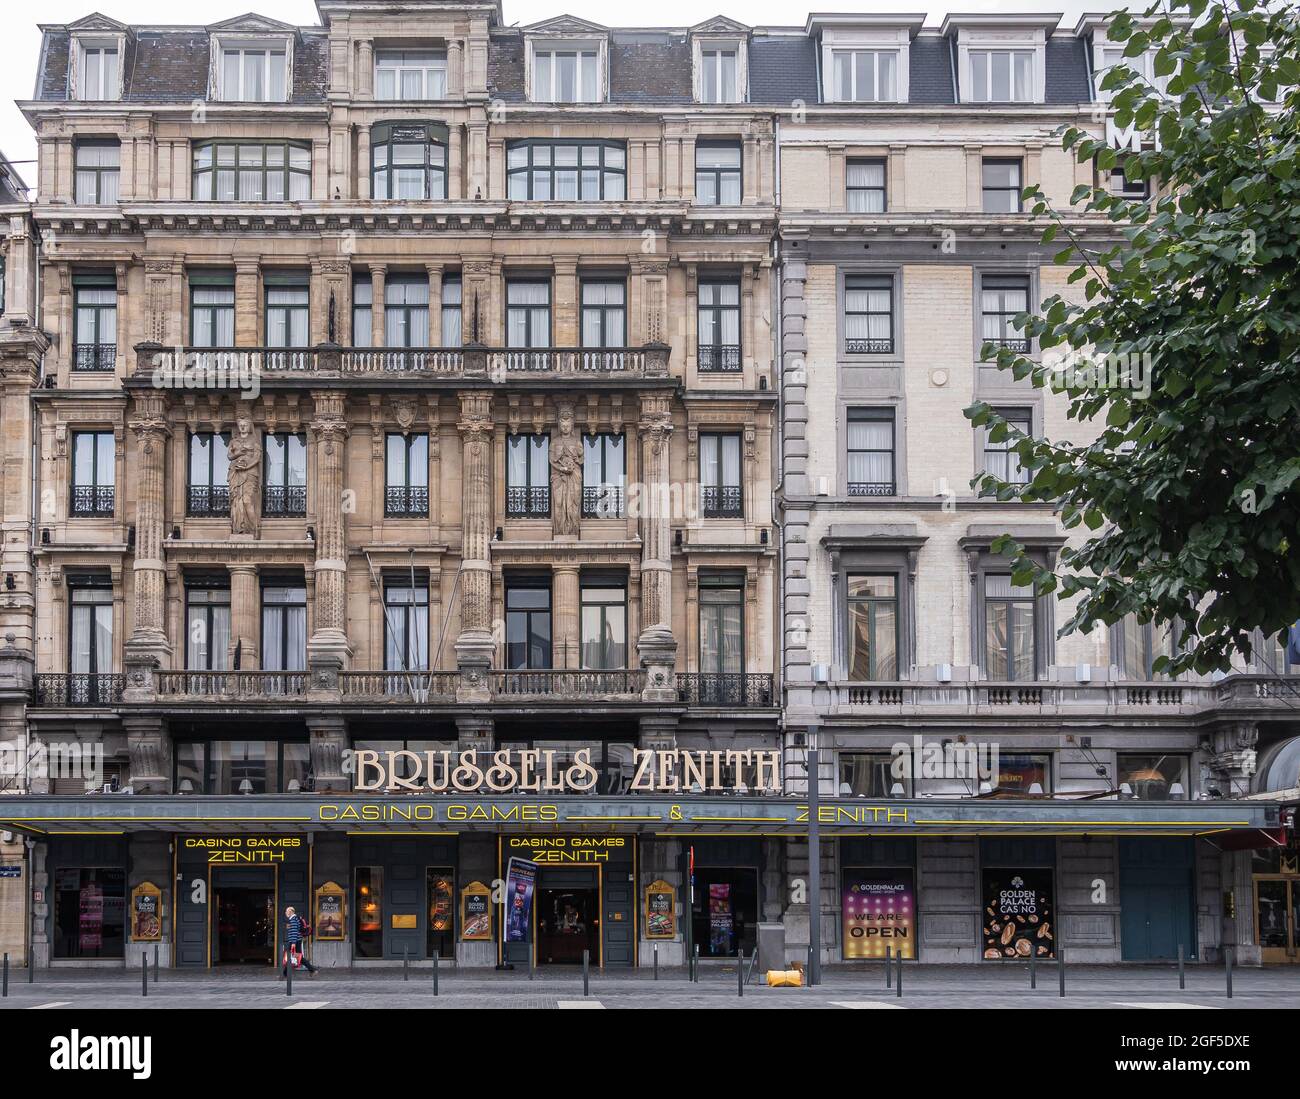 Bruxelles, Belgique - 31 juillet 2021 : façade du Casino Zenith sur la place de Brouckère. Architecture classique beige et grise du XIXe siècle. Hauteur de couleur Banque D'Images